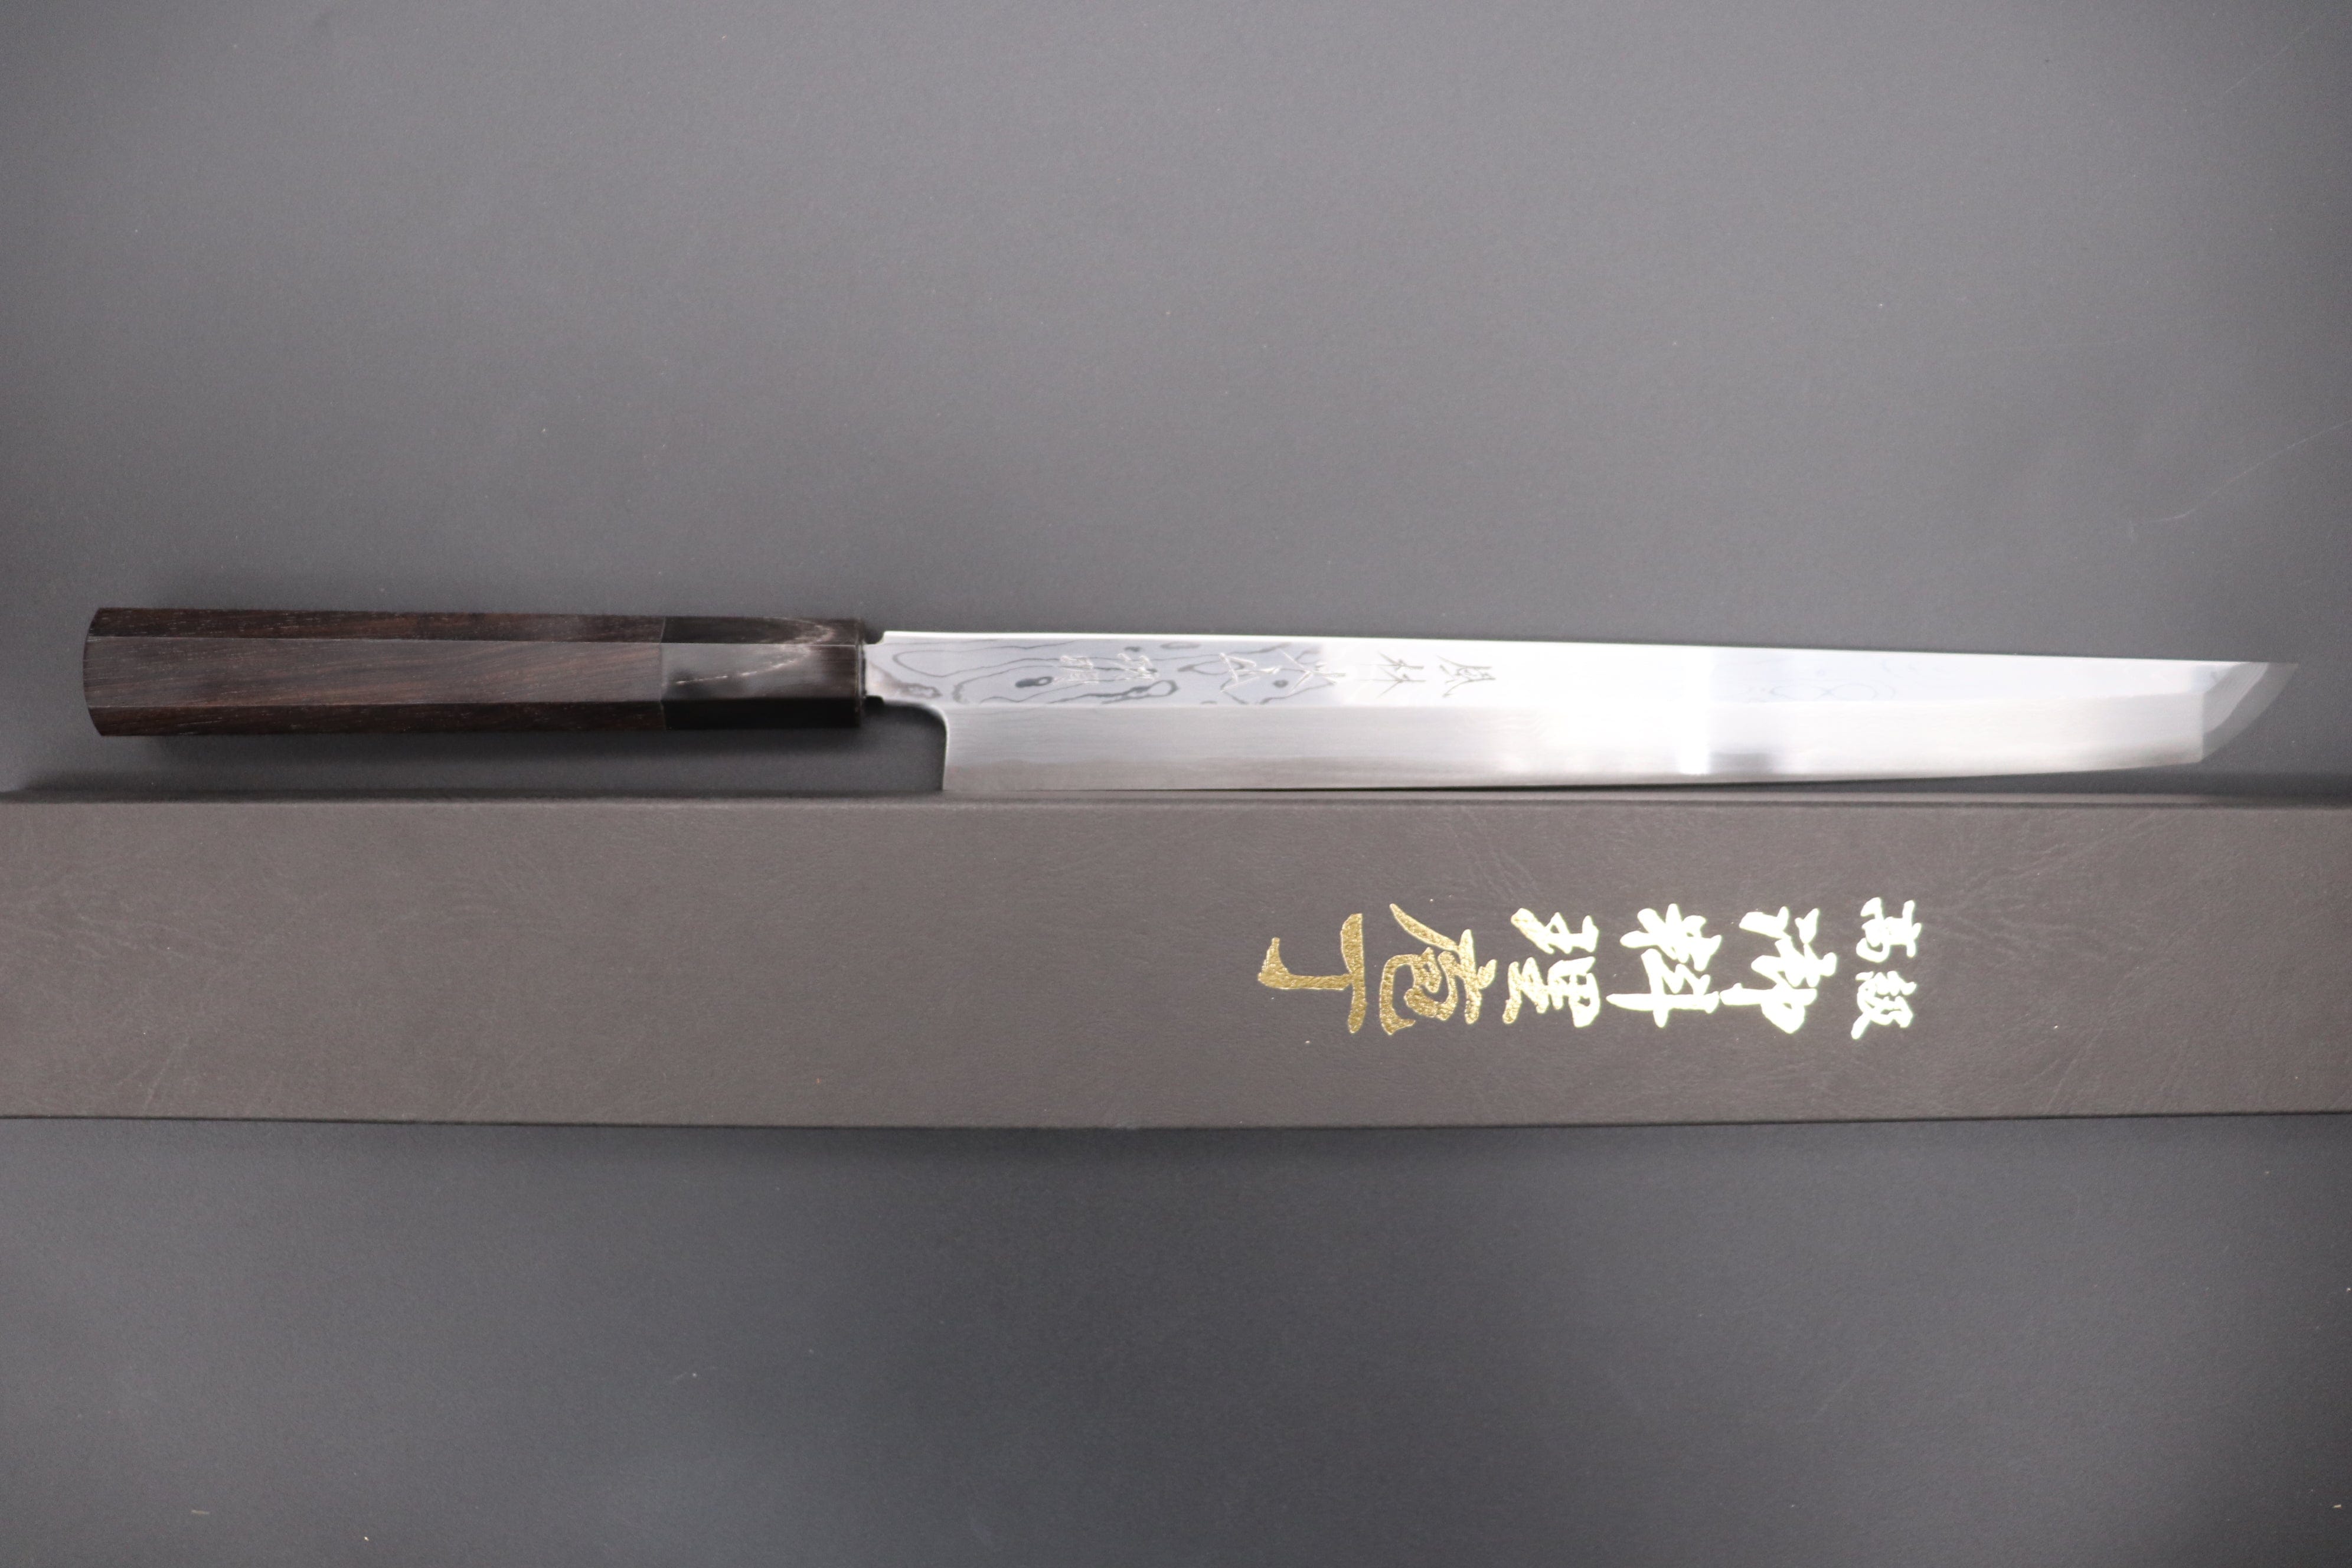 Sakai Kikumori Kiridashi 21mm Carbon Steel – Uptown Cutlery